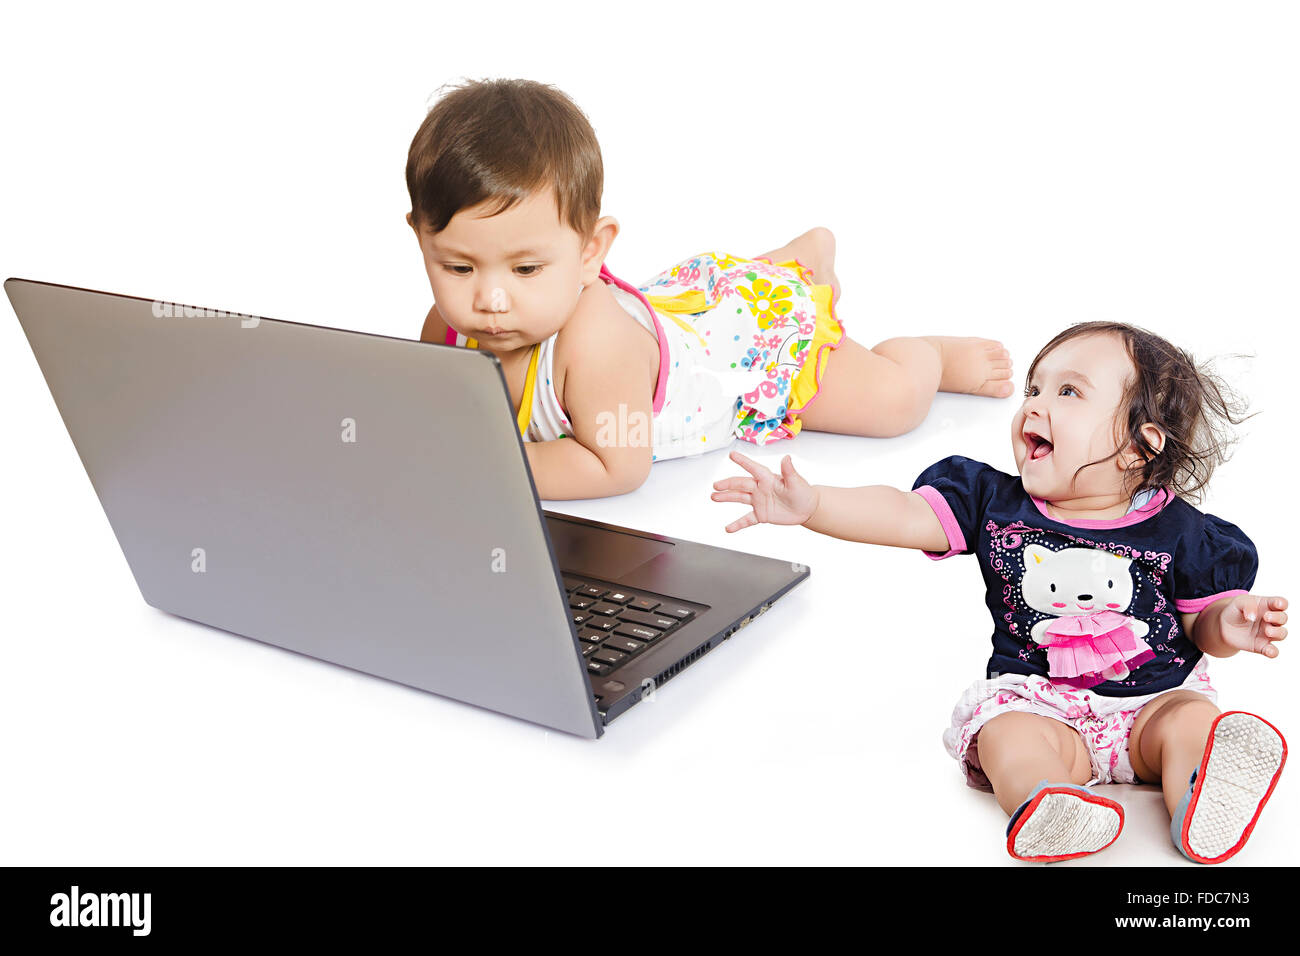 2 personnes enfants bébés filles seulement amis l'éducation pour ordinateur portable Banque D'Images